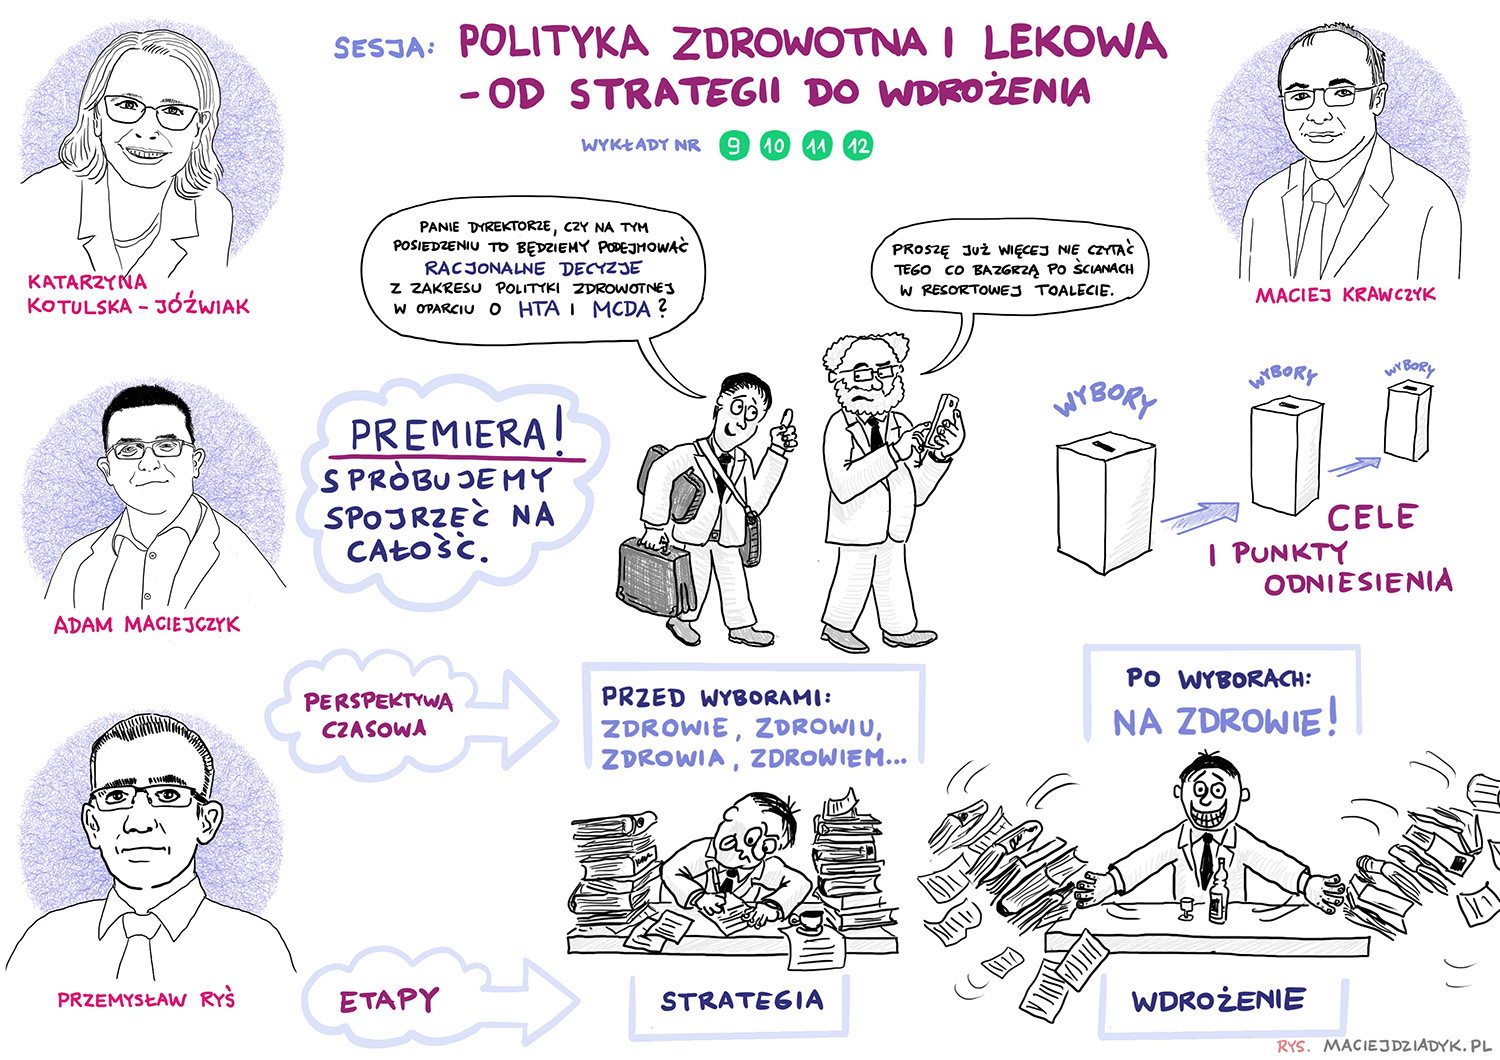 Sesja 3. Polityka zdrowotna, polityka lekowa – od strategii do wdrożenia. Rys. Maciej Dziadyk maciejdziadyk.pl